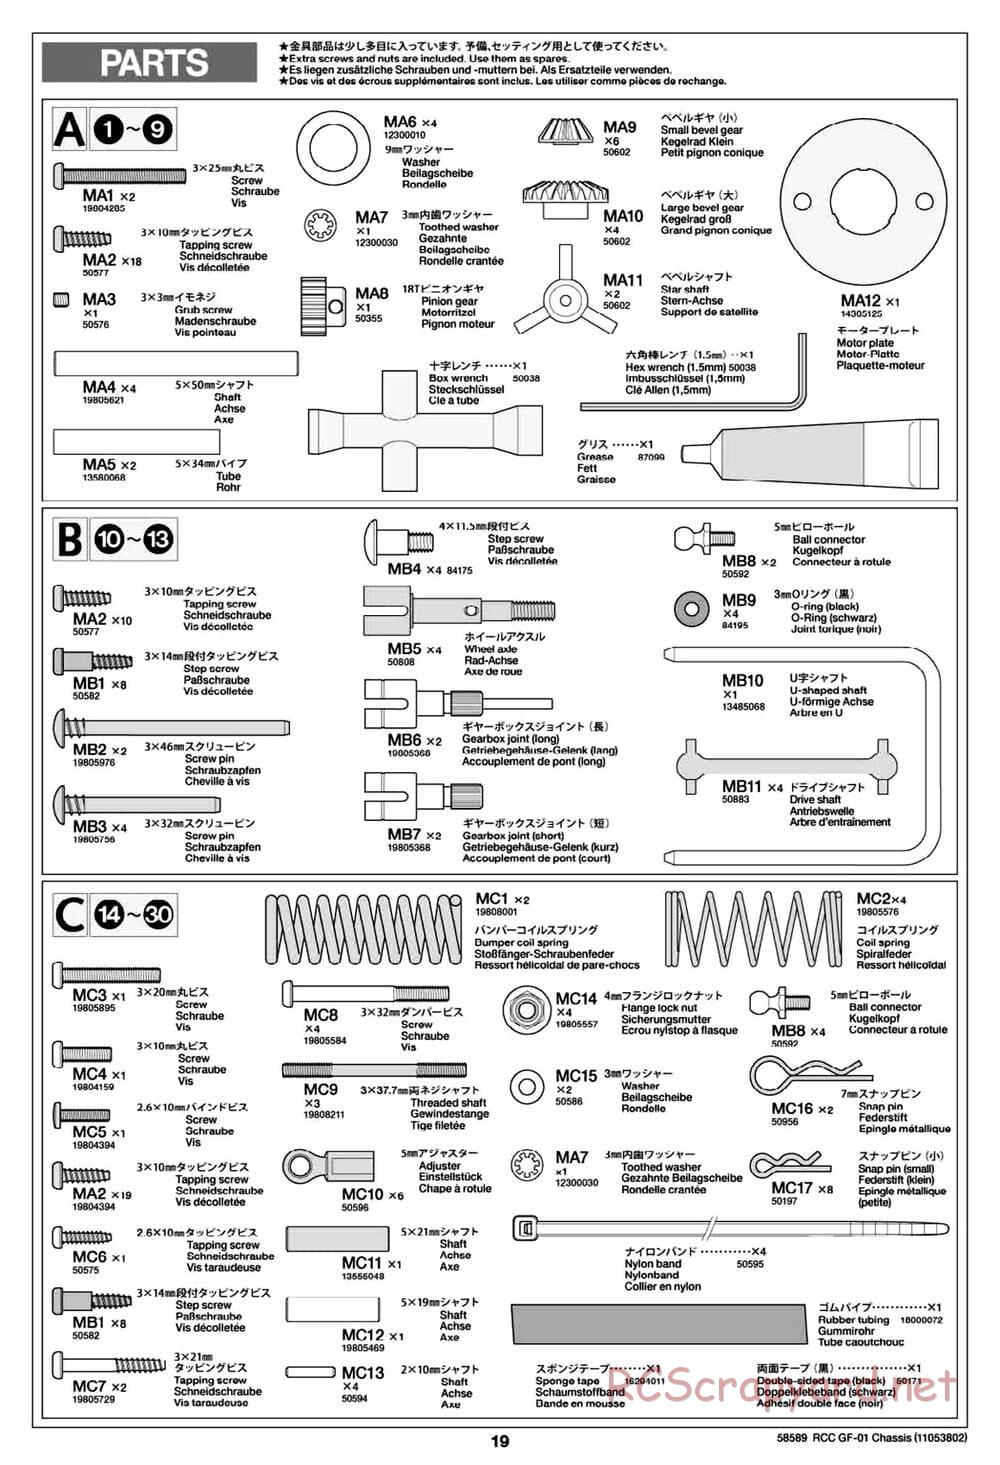 Tamiya - GF-01 Chassis - Manual - Page 19